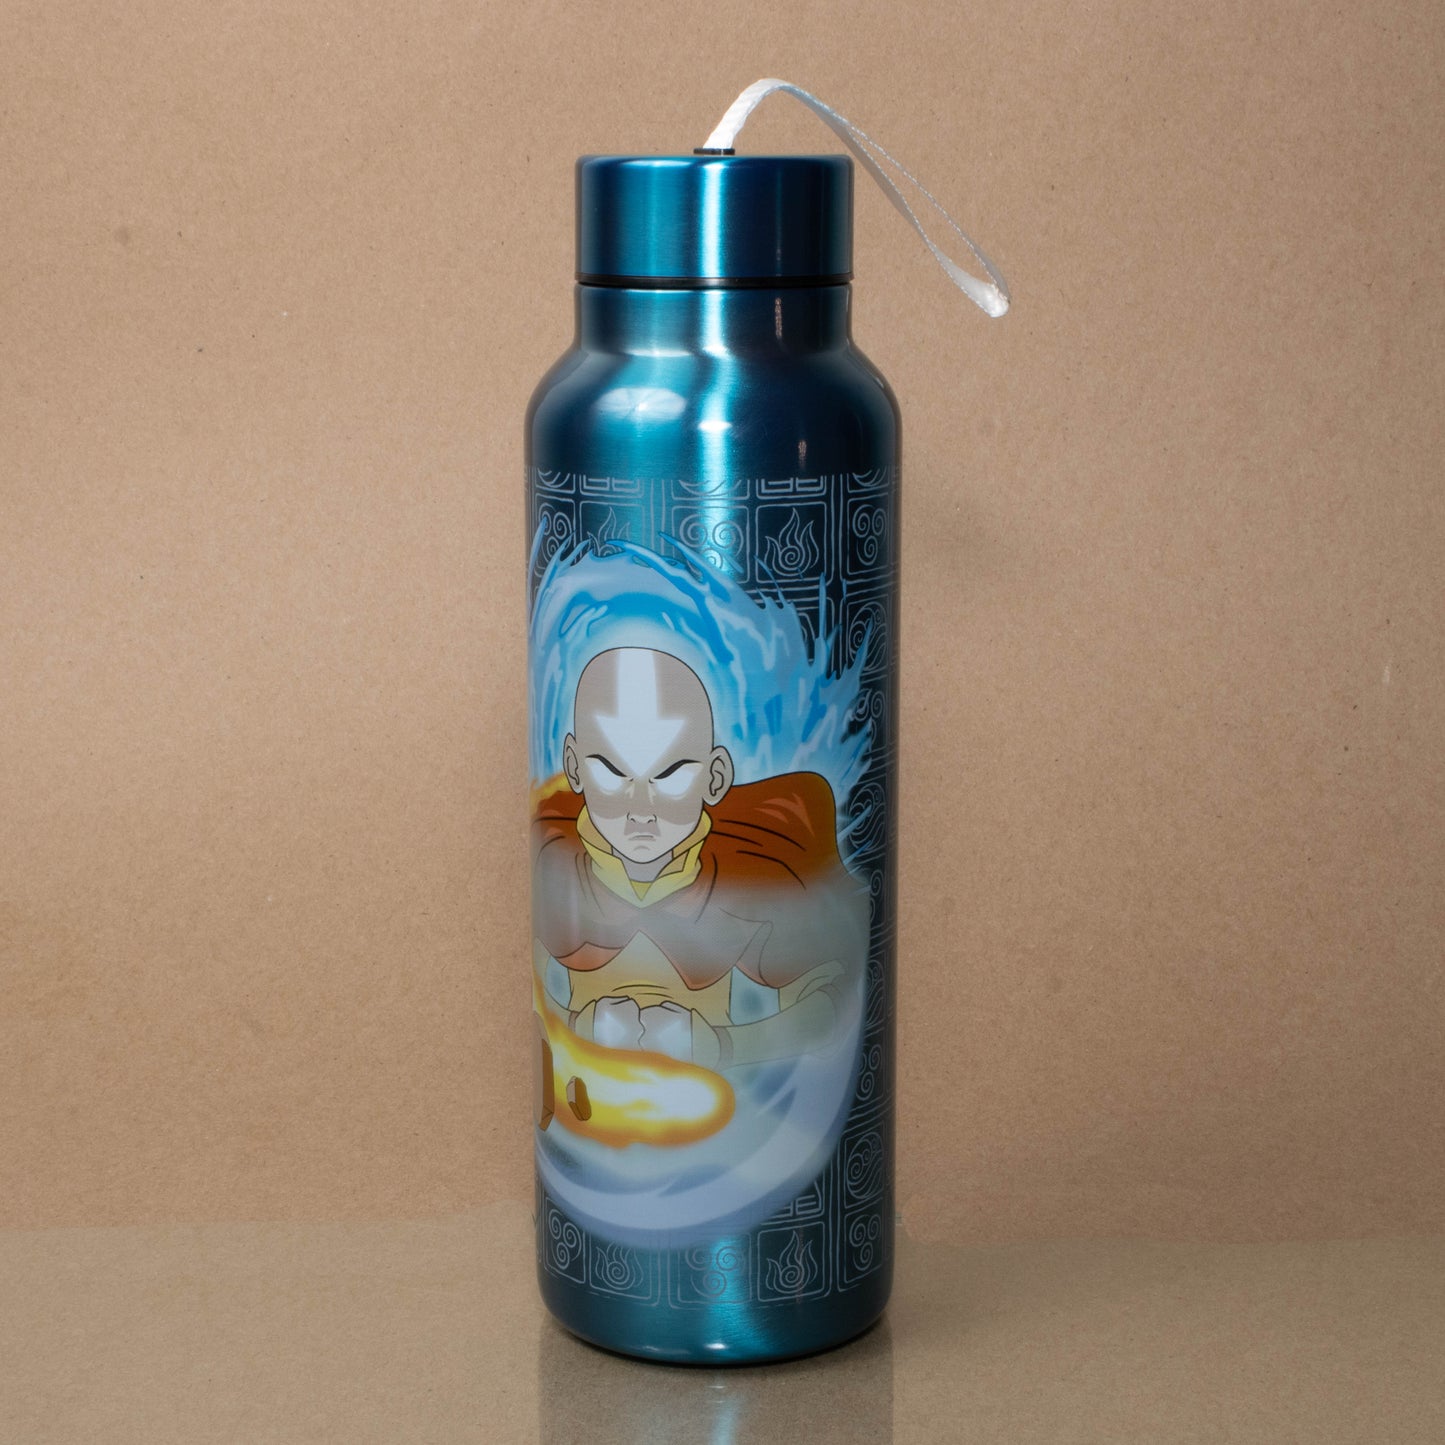 Aang (Avatar: The Last Airbender) 27 oz Stainless Steel Water Bottle